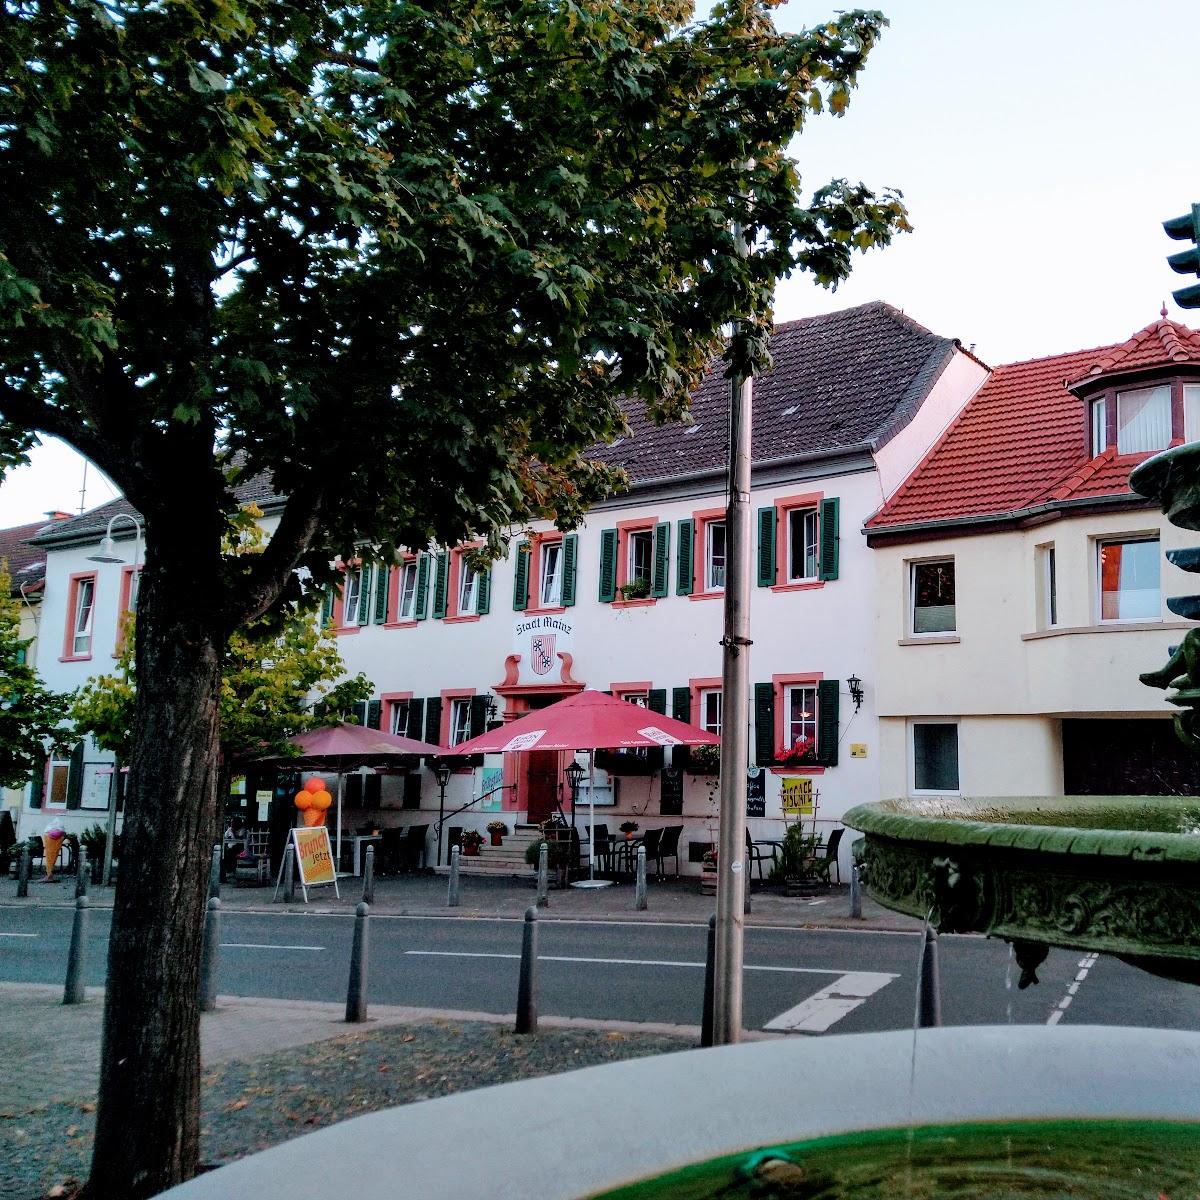 Restaurant "Hotel Stadt Mainz" in Schwabenheim an der Selz